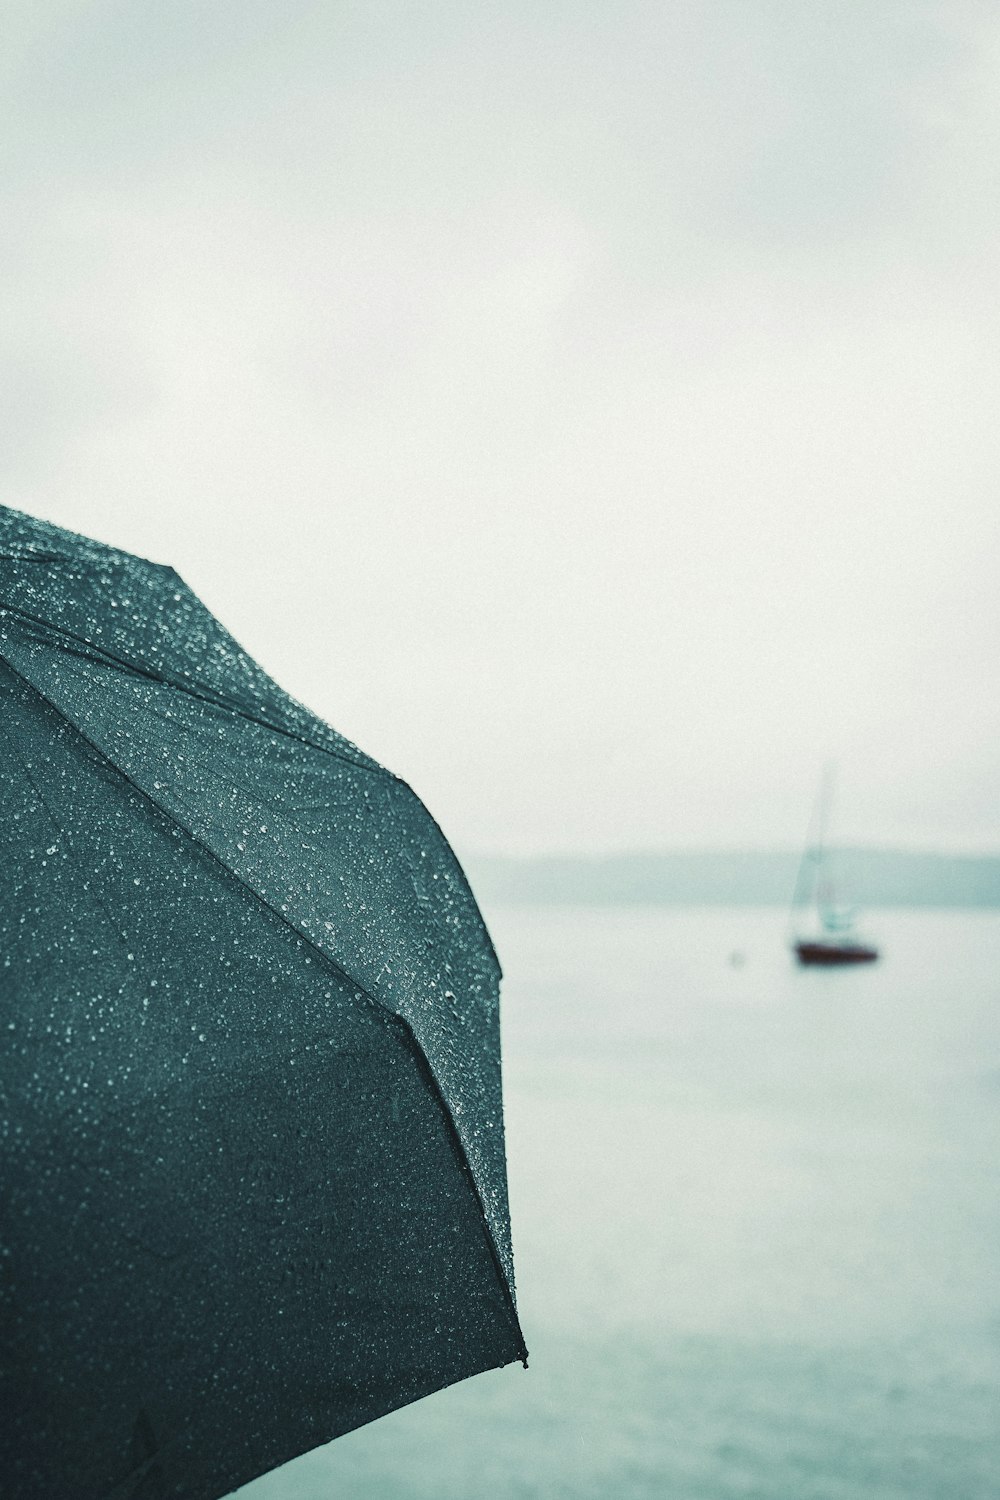 Paraguas negro cerca del cuerpo de agua durante el día